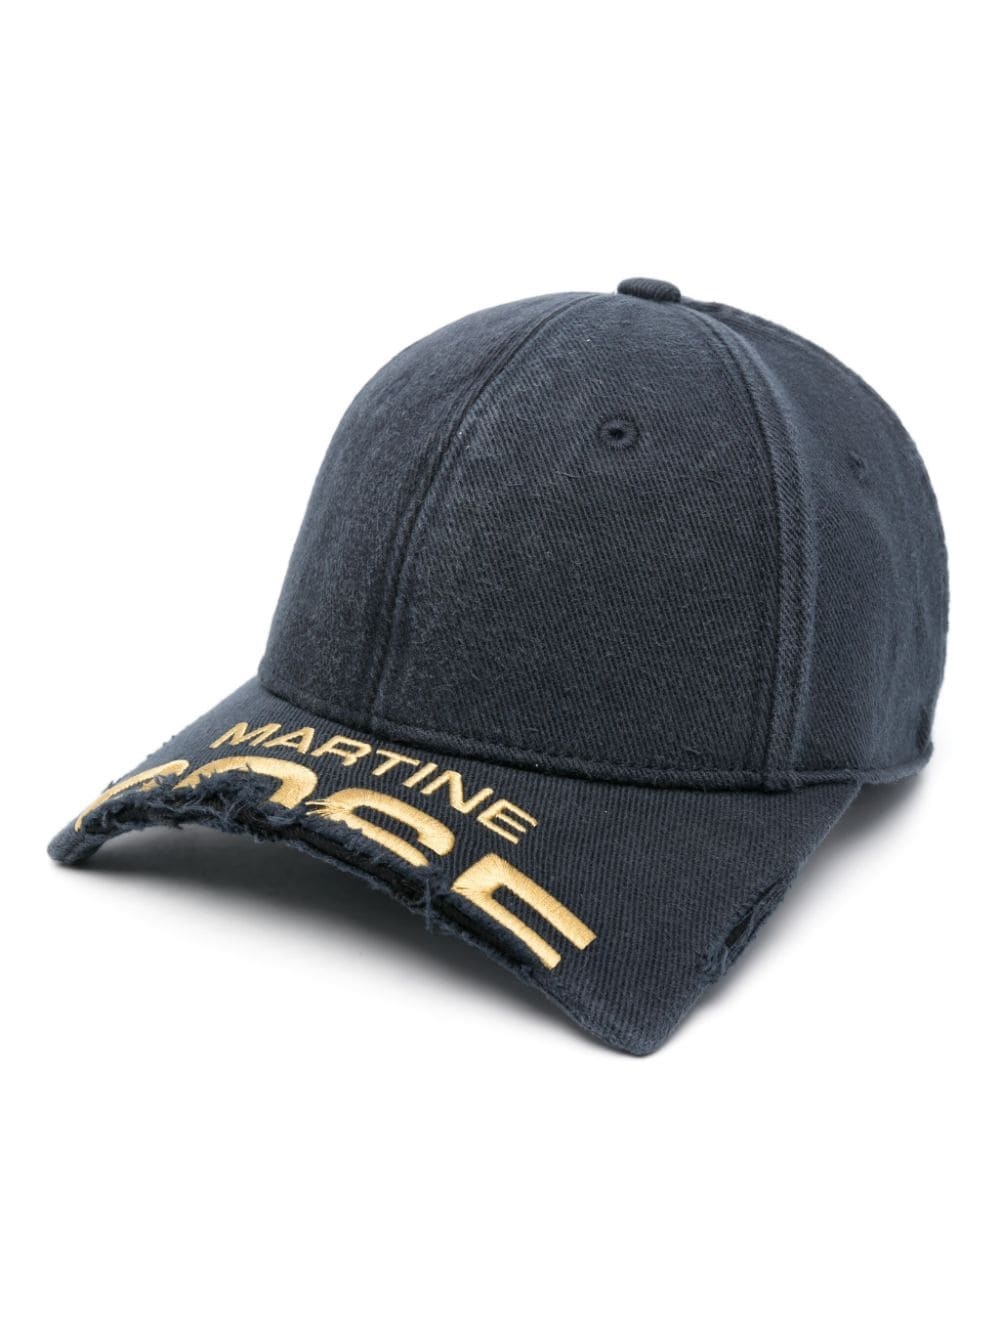 square-peak baseball cap - 1